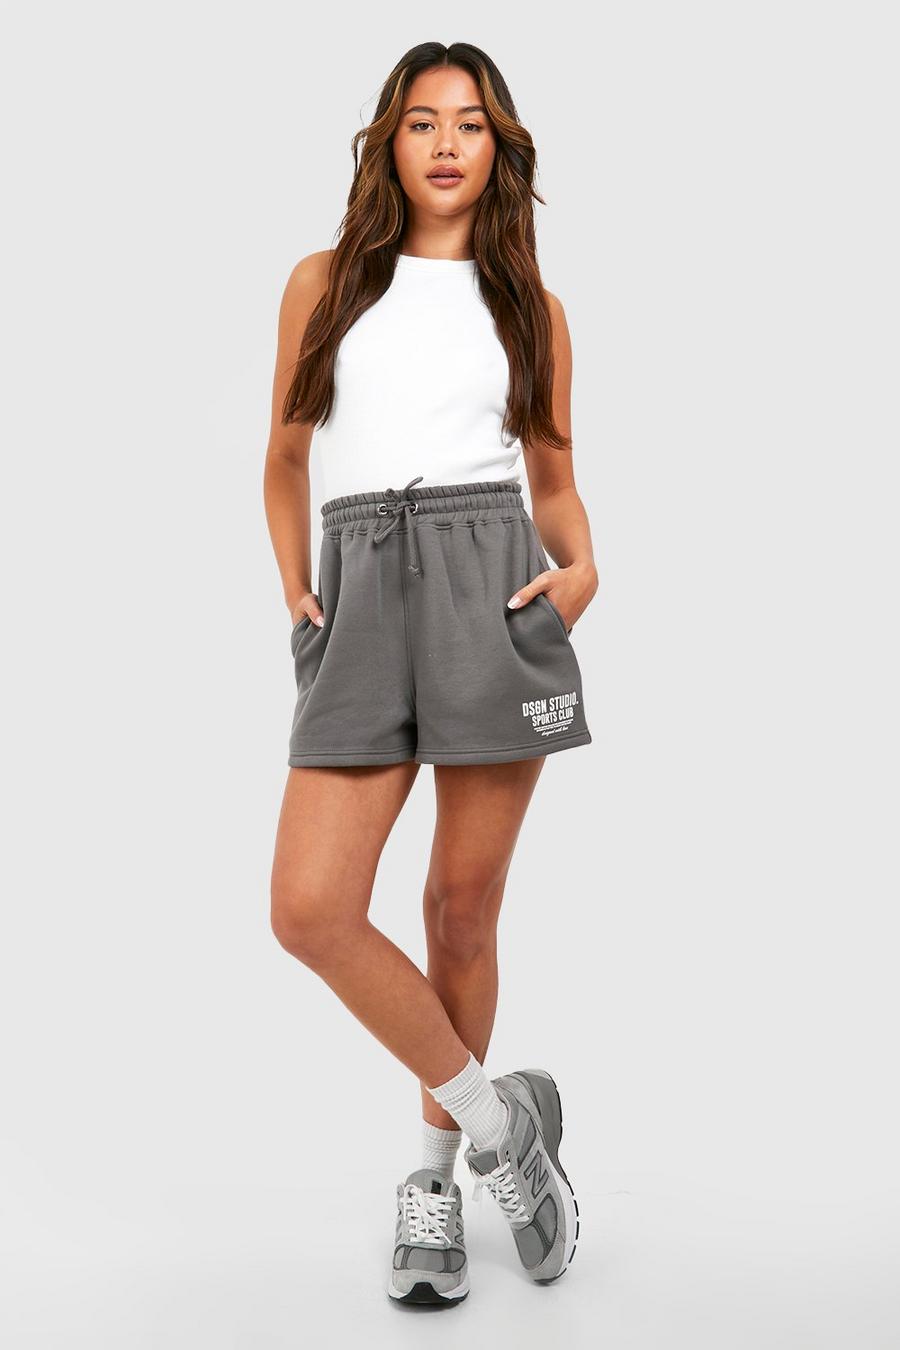 Sweat-Shorts mit Dsgn Studio Sports Clubs Slogan, Charcoal